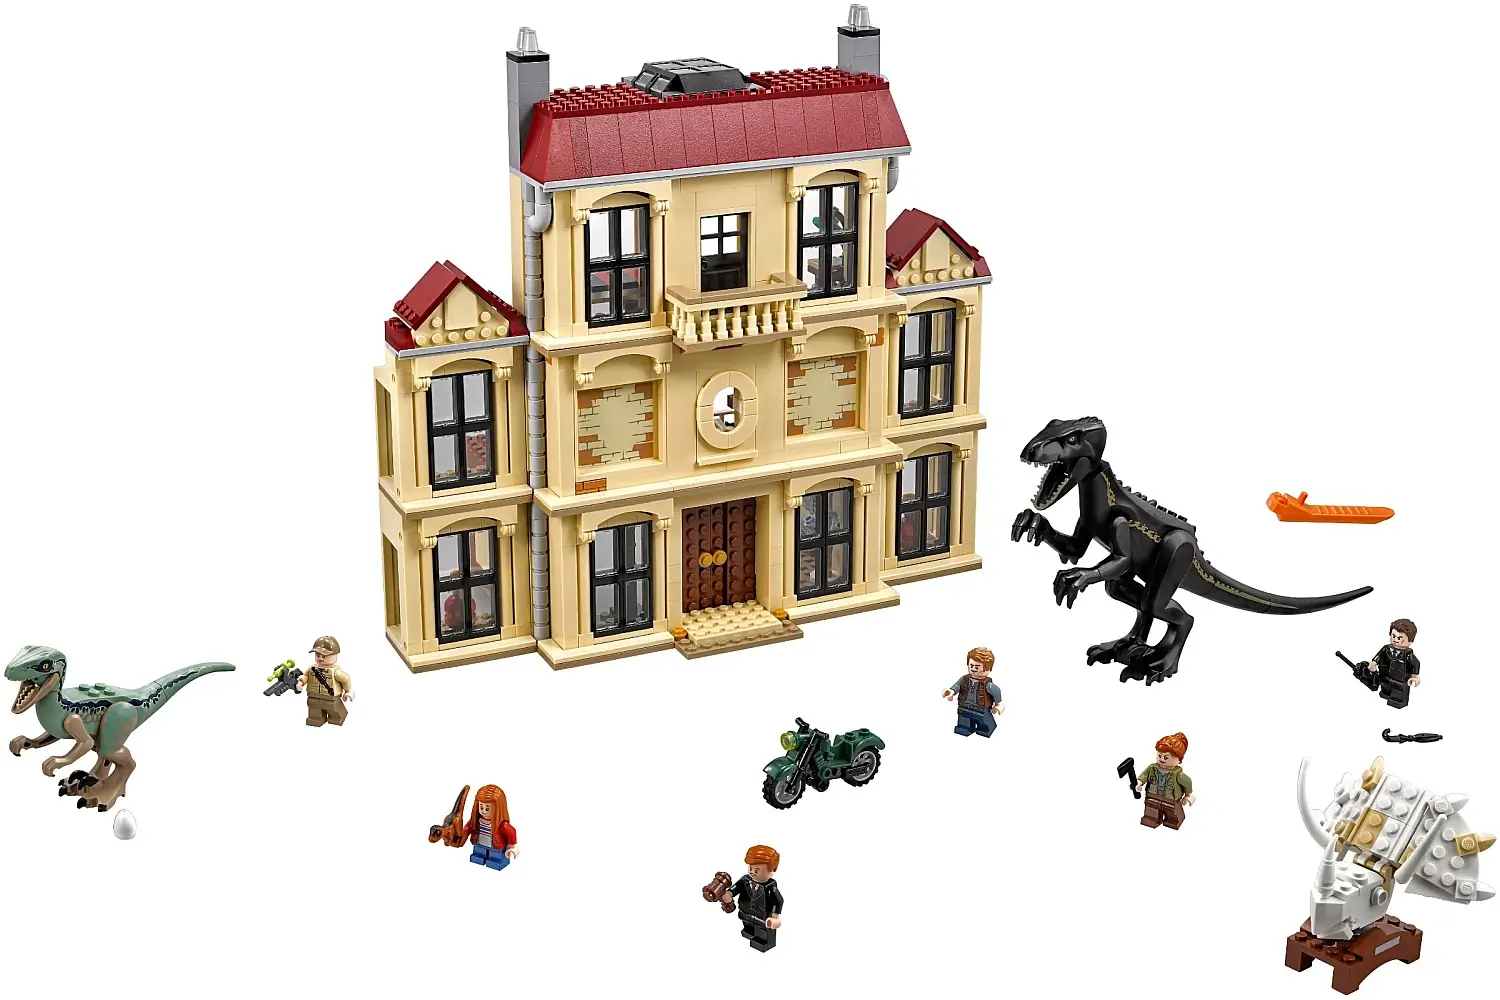 Atak Indoraptora na posiadłość - seria LEGO® Jurassic World™